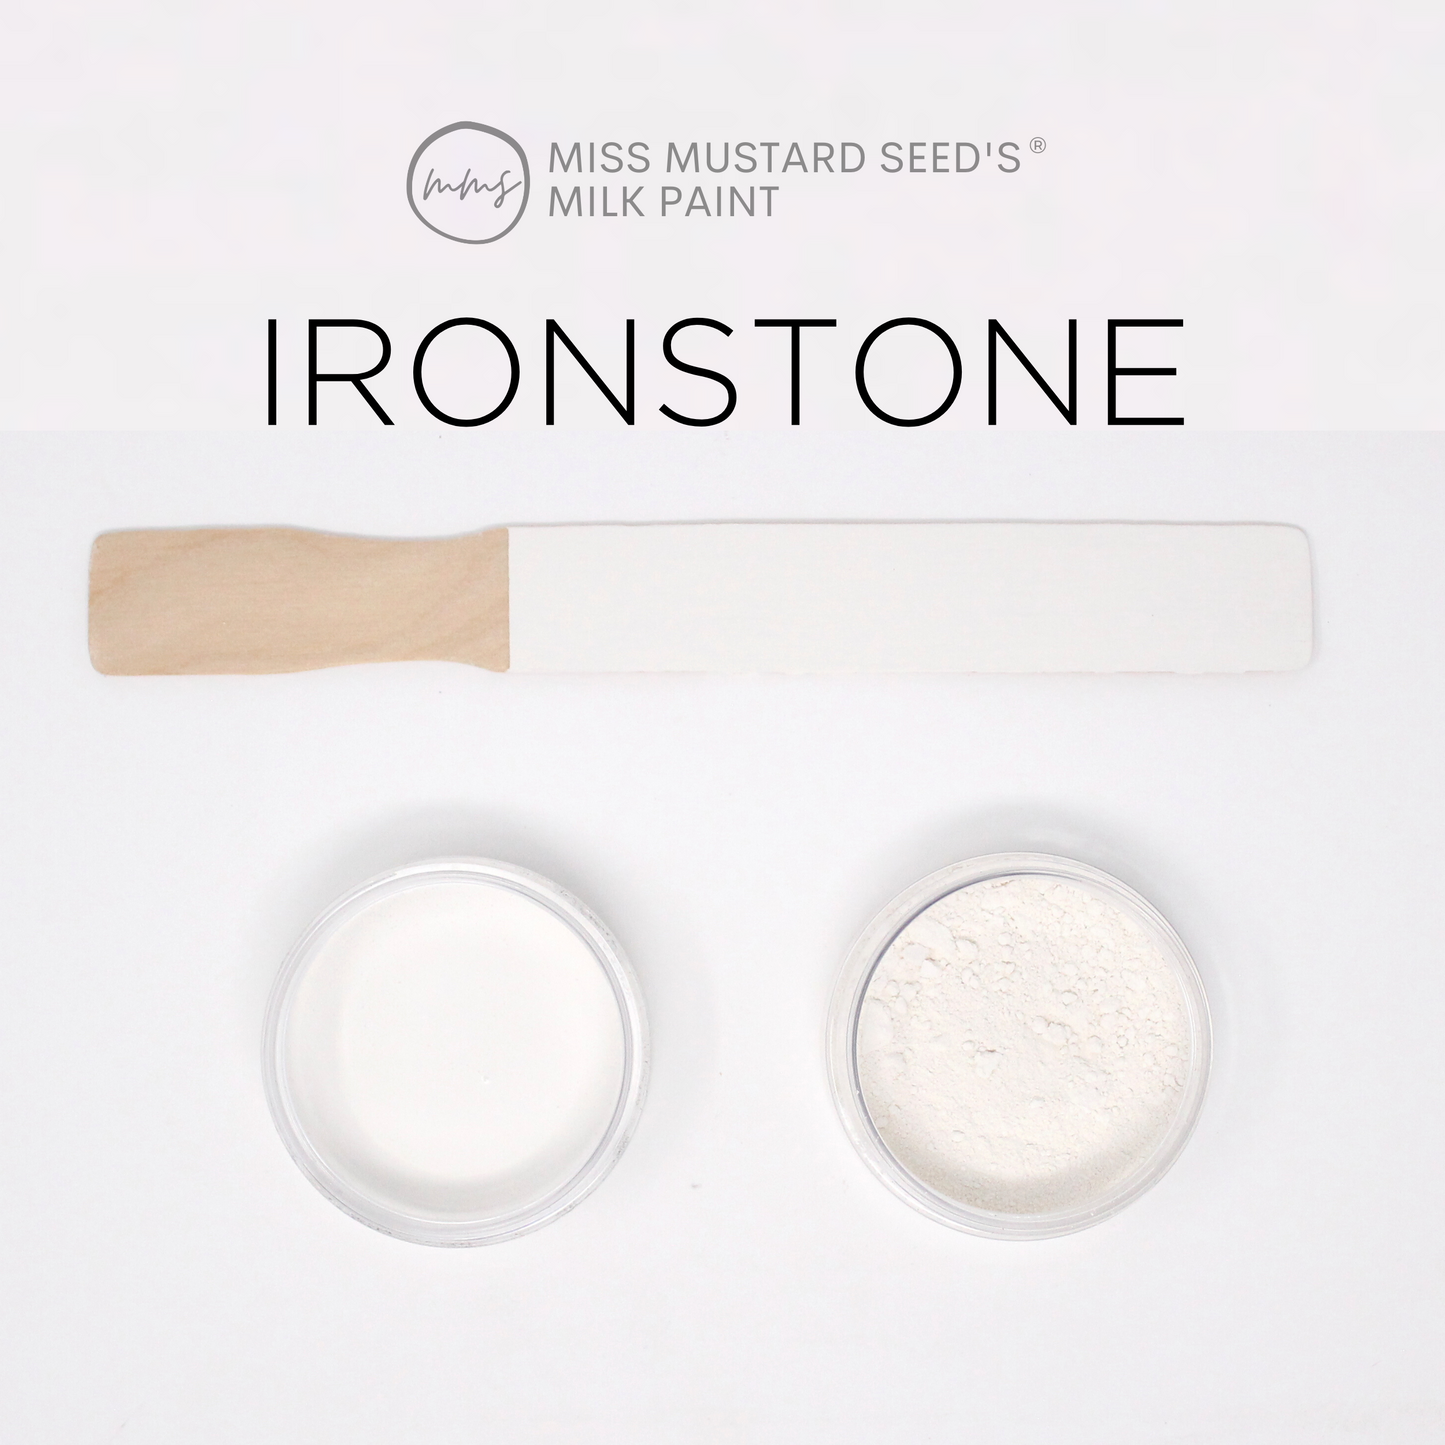 MilkPaint™ - Ironstone